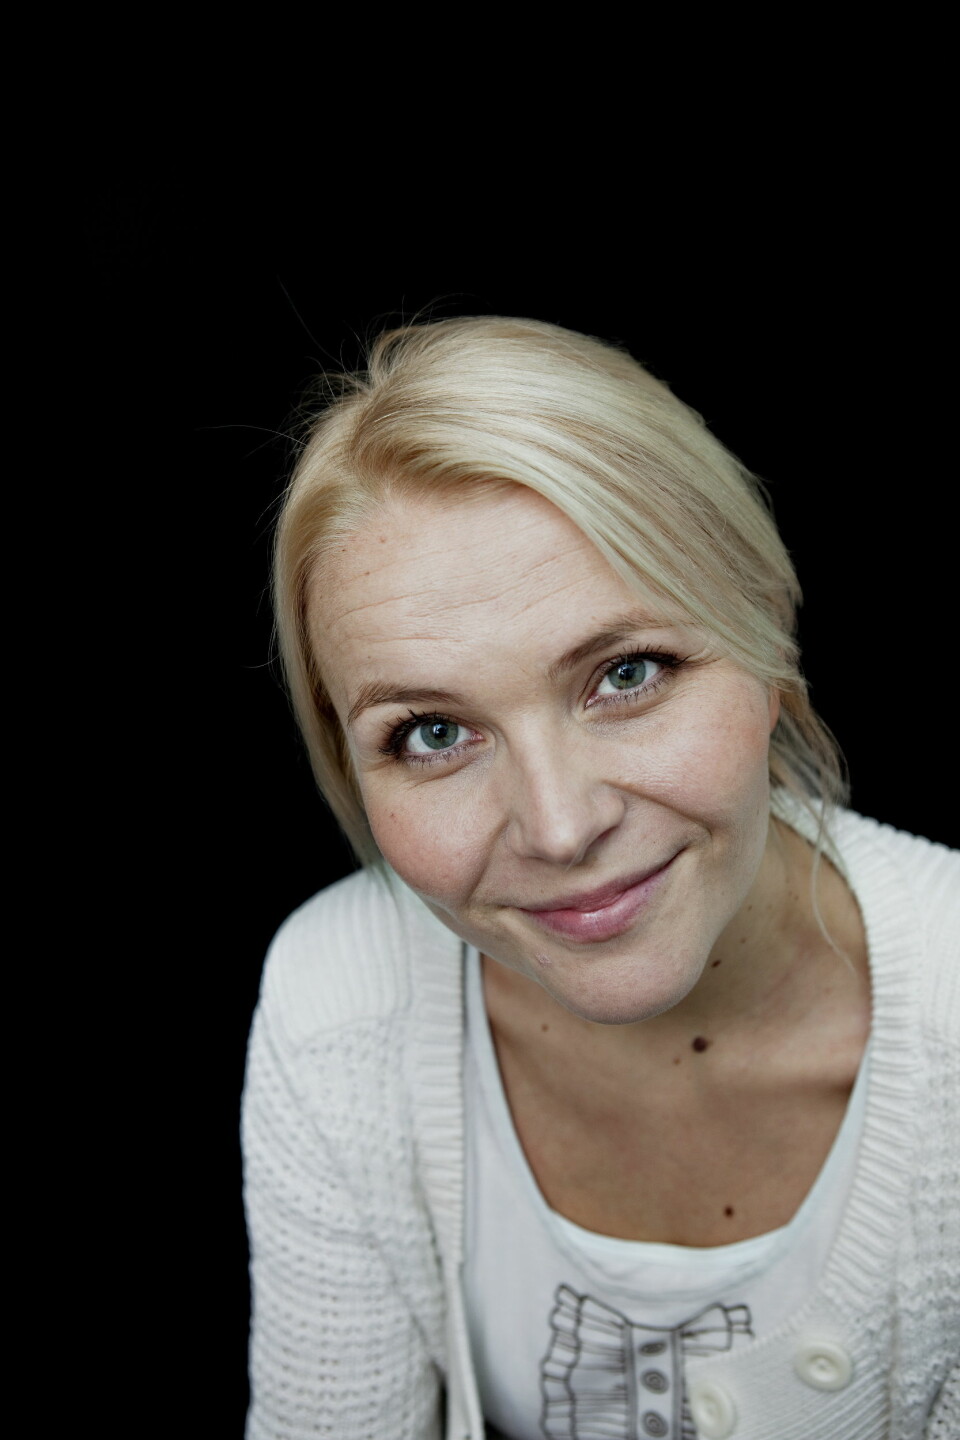 Hildegunn Amanda Soldal ernettsjef i NRK.